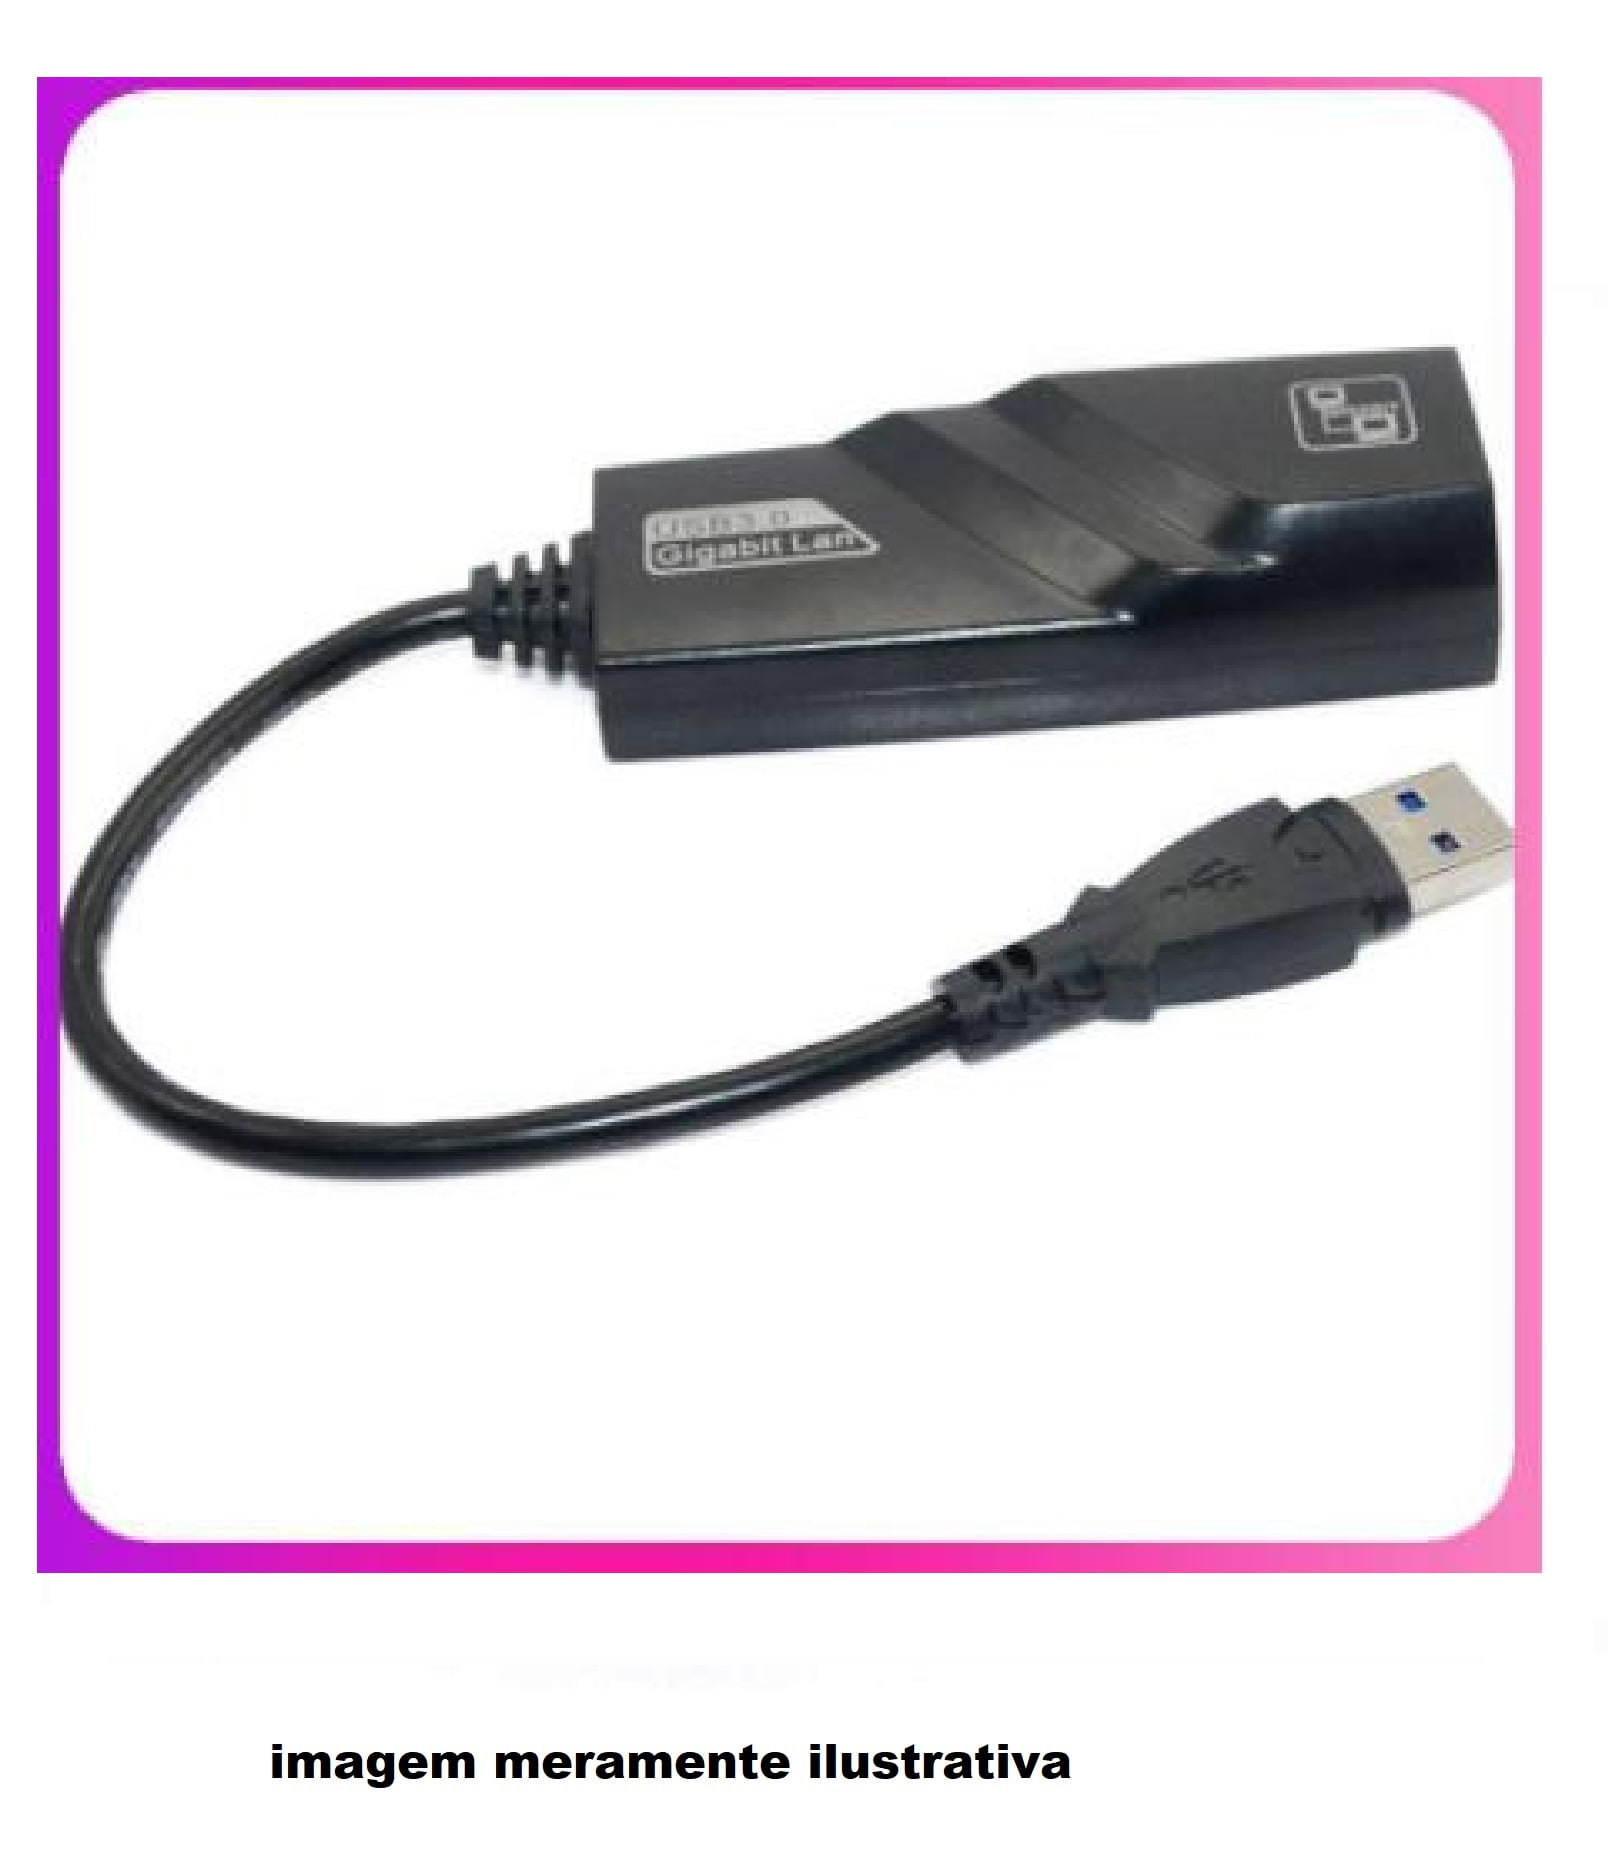 EXTERNO USB 3.0 GIGABIT LAN USB PARA RJ45 NIC RTL8153 CHIP